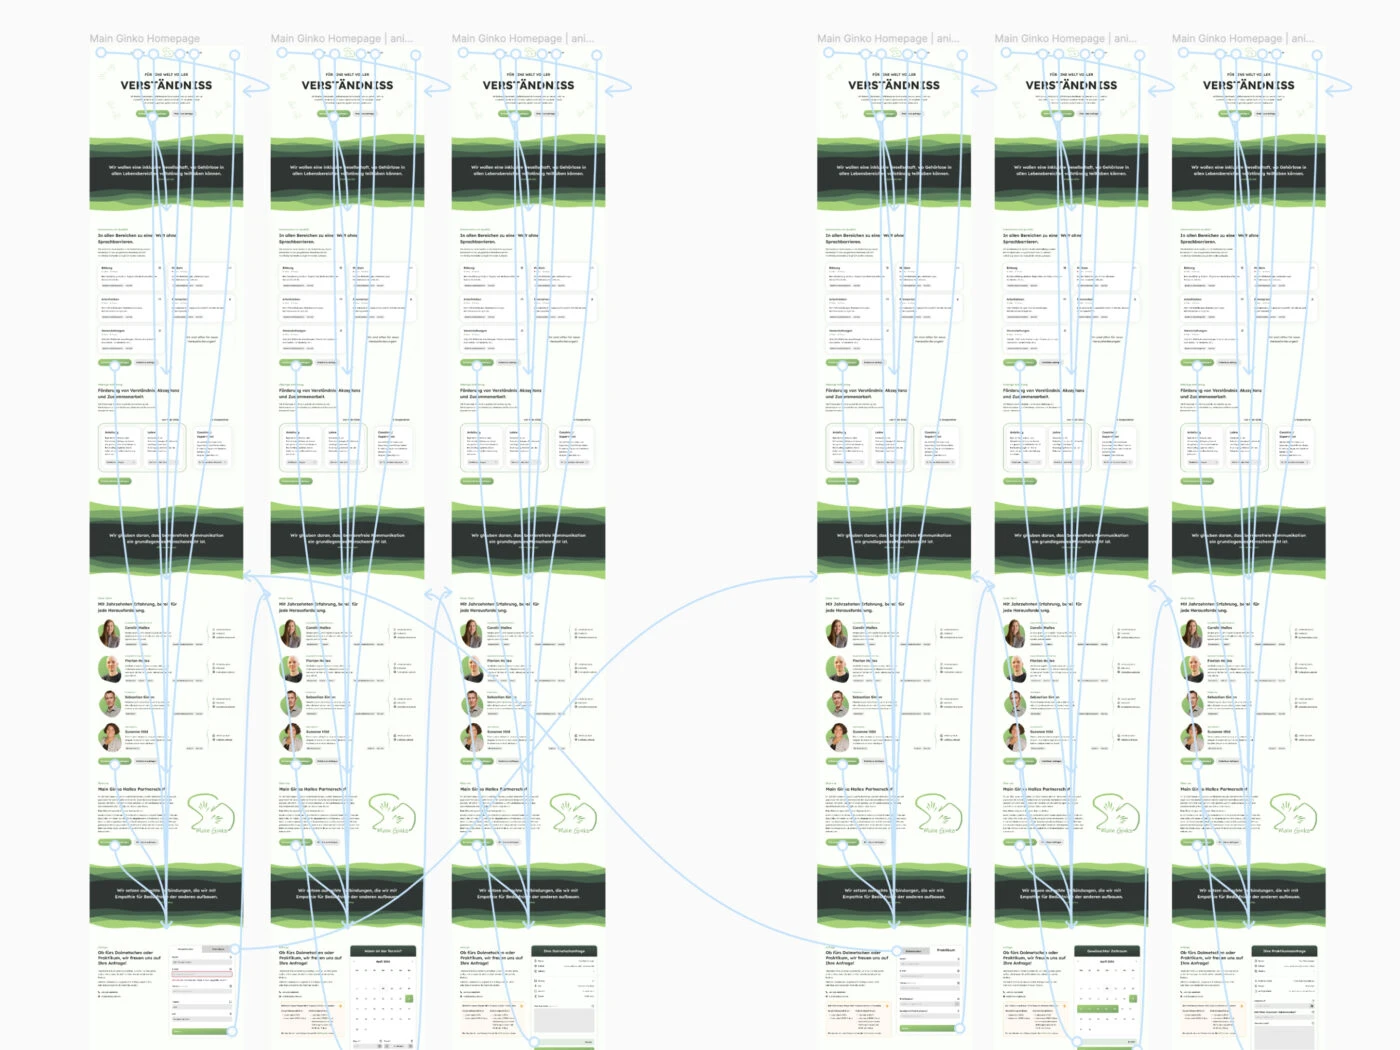 Ein komplexes Wireframe-Layout in Figma für die Main Ginko Homepage, das die Benutzerführung und Interaktionselemente zeigt. Mehrere Versionen der Seite sind nebeneinander dargestellt, jeweils verbunden durch Linien, die den Fluss der Benutzererfahrung illustrieren. Das Design verwendet ein Farbschema mit Grün- und Grautönen.